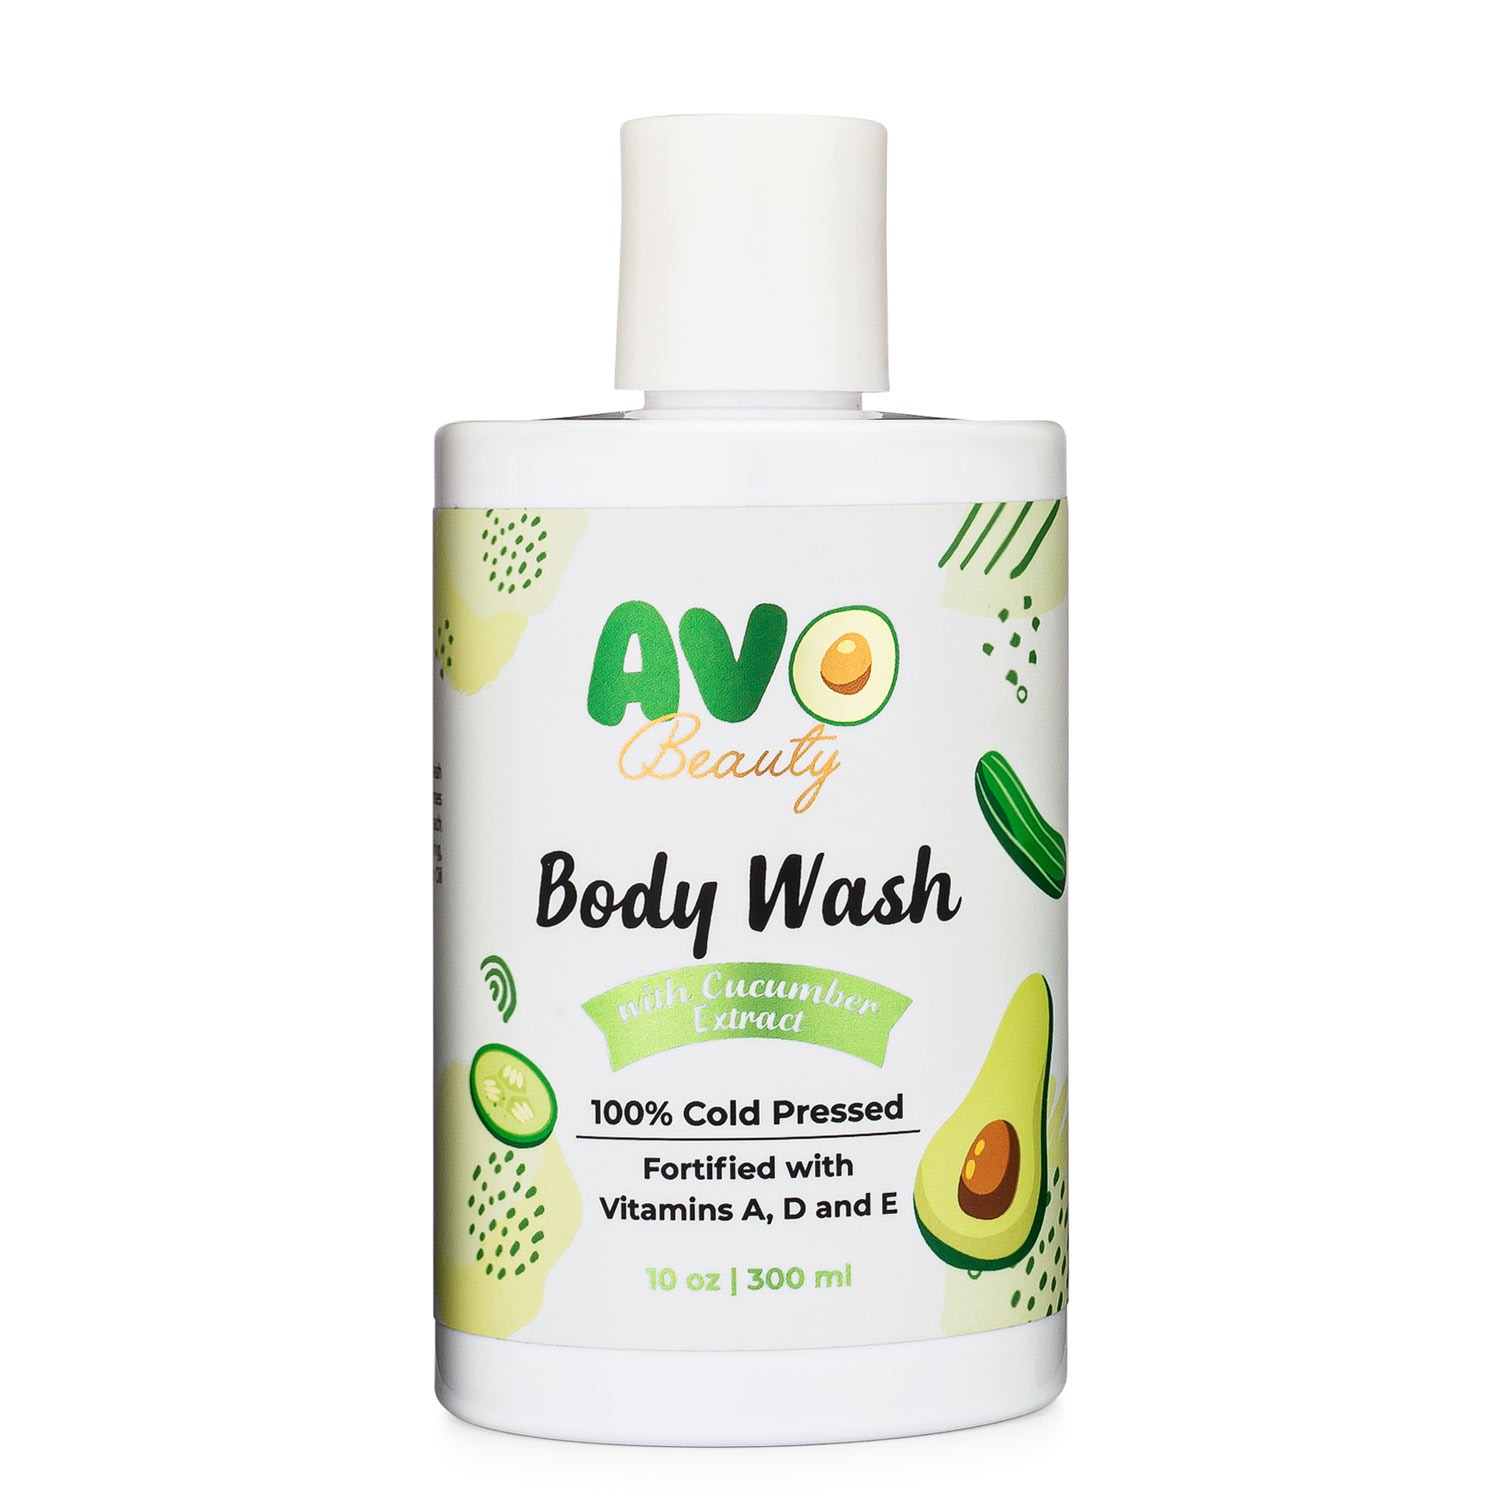 Avocado Body Wash Avo Beauty Image